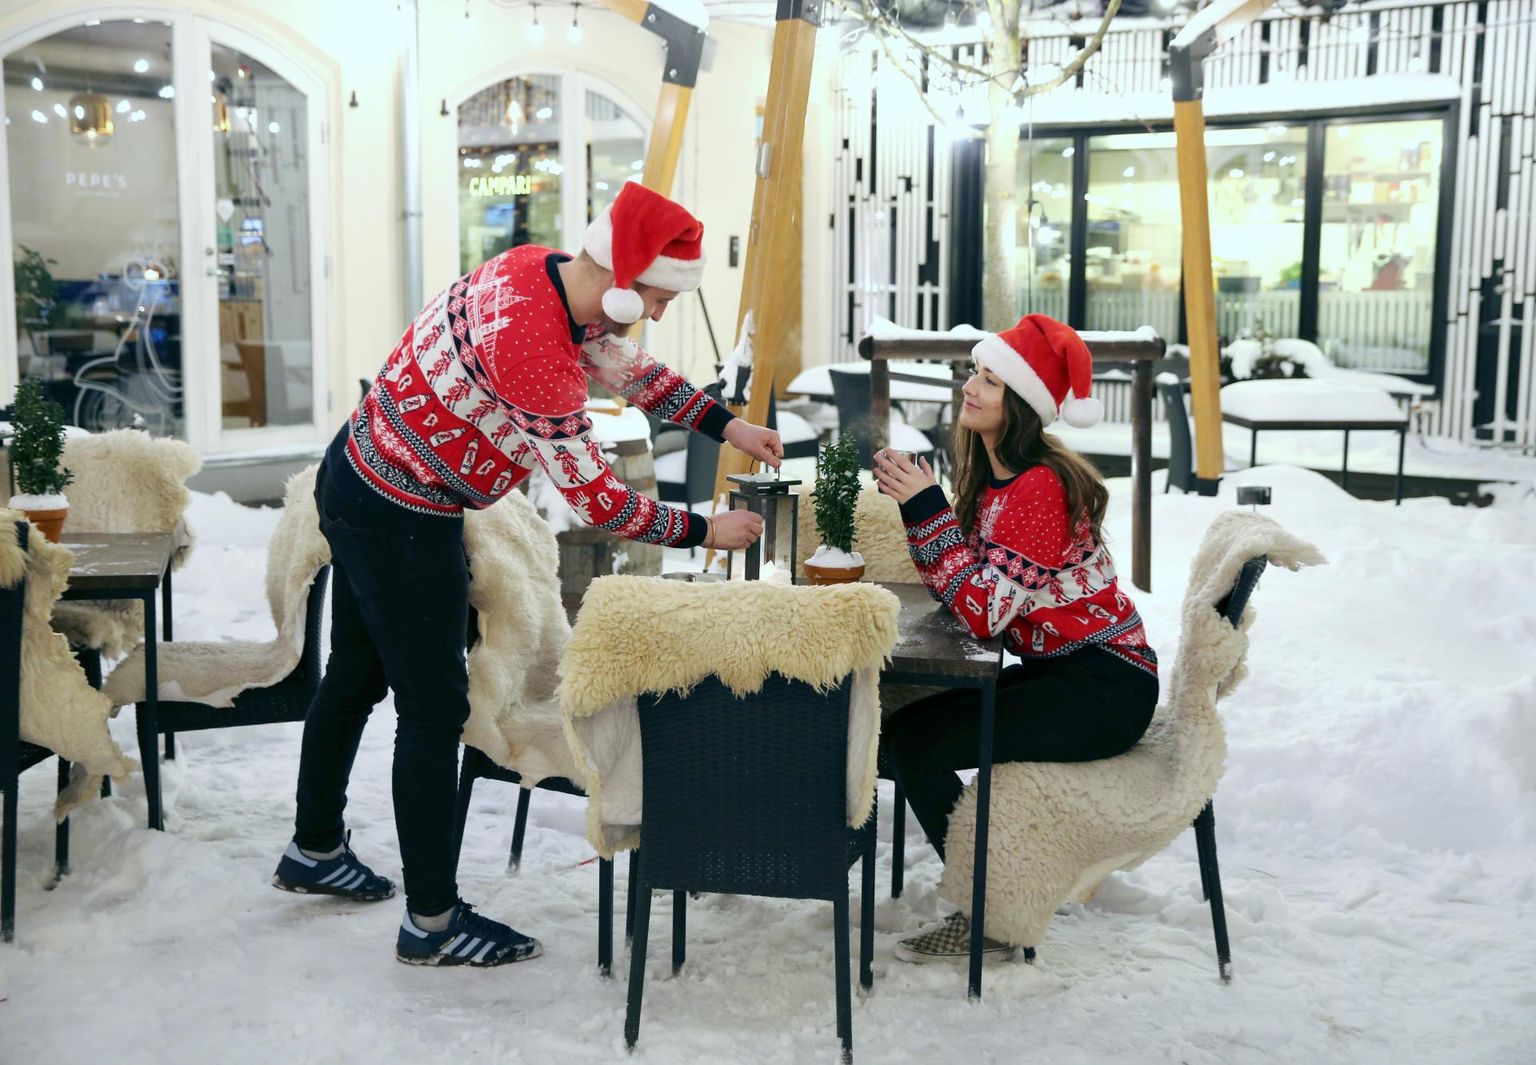 Ülikooli tänava restoranis Pepe’s avati pühapäeval jõuluaed, kus ootavad lõke, ehitud jõulupuu, soojalambid ja pehmed toolid. Päkapikkudeks on kehastunud töötaja Stina Kaldma ja tegevjuht Martin Sőgel.